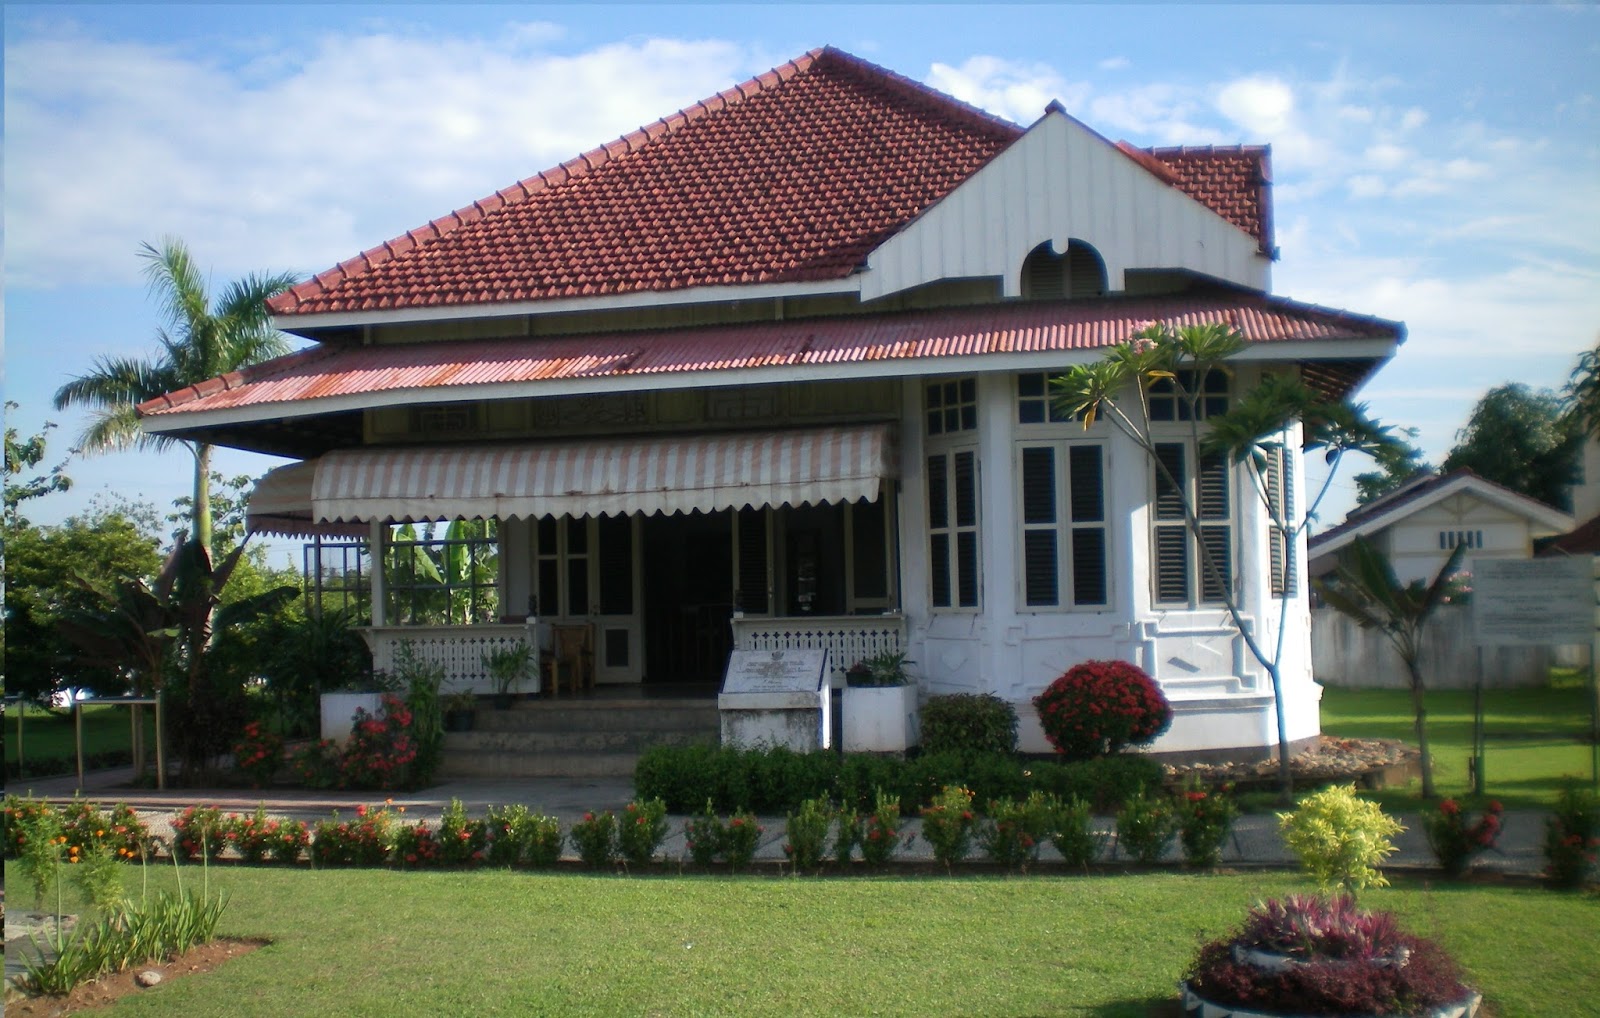 Gambar Desain Rumah Zaman Kolonial Belanda Colonial Houses Indonesia